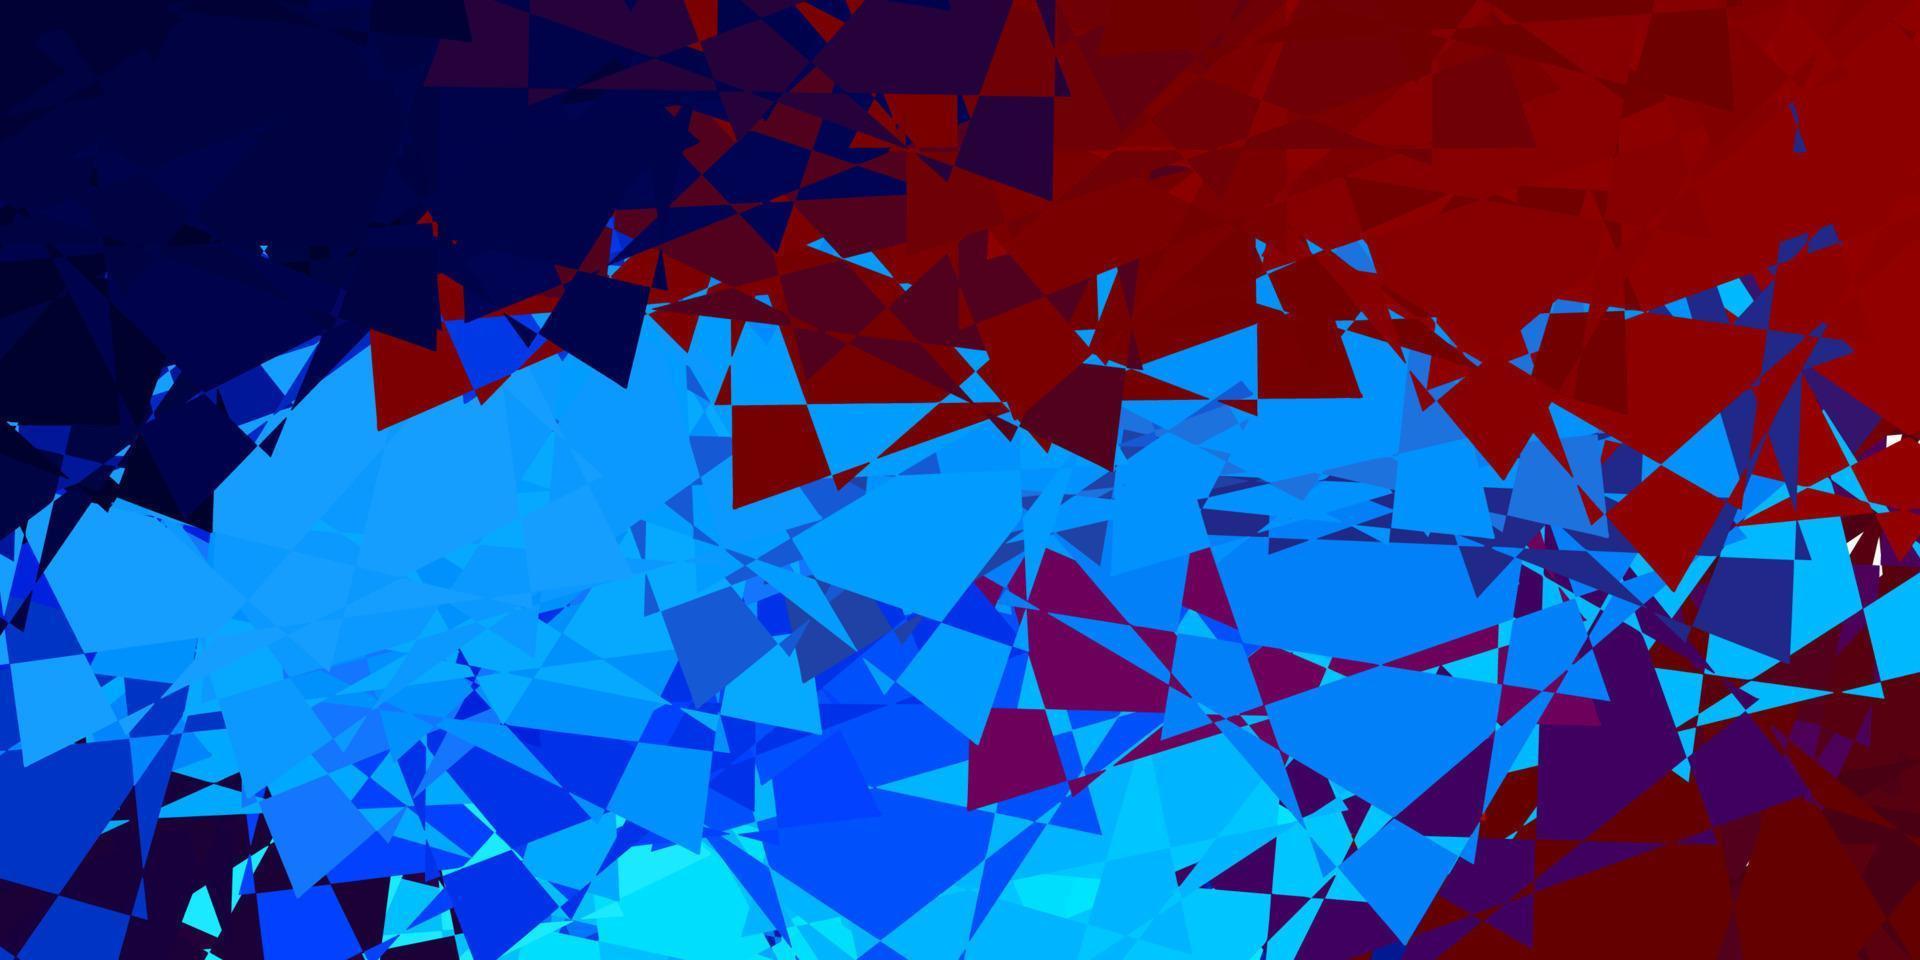 hellblaues, rotes Vektorlayout mit Dreiecksformen. vektor